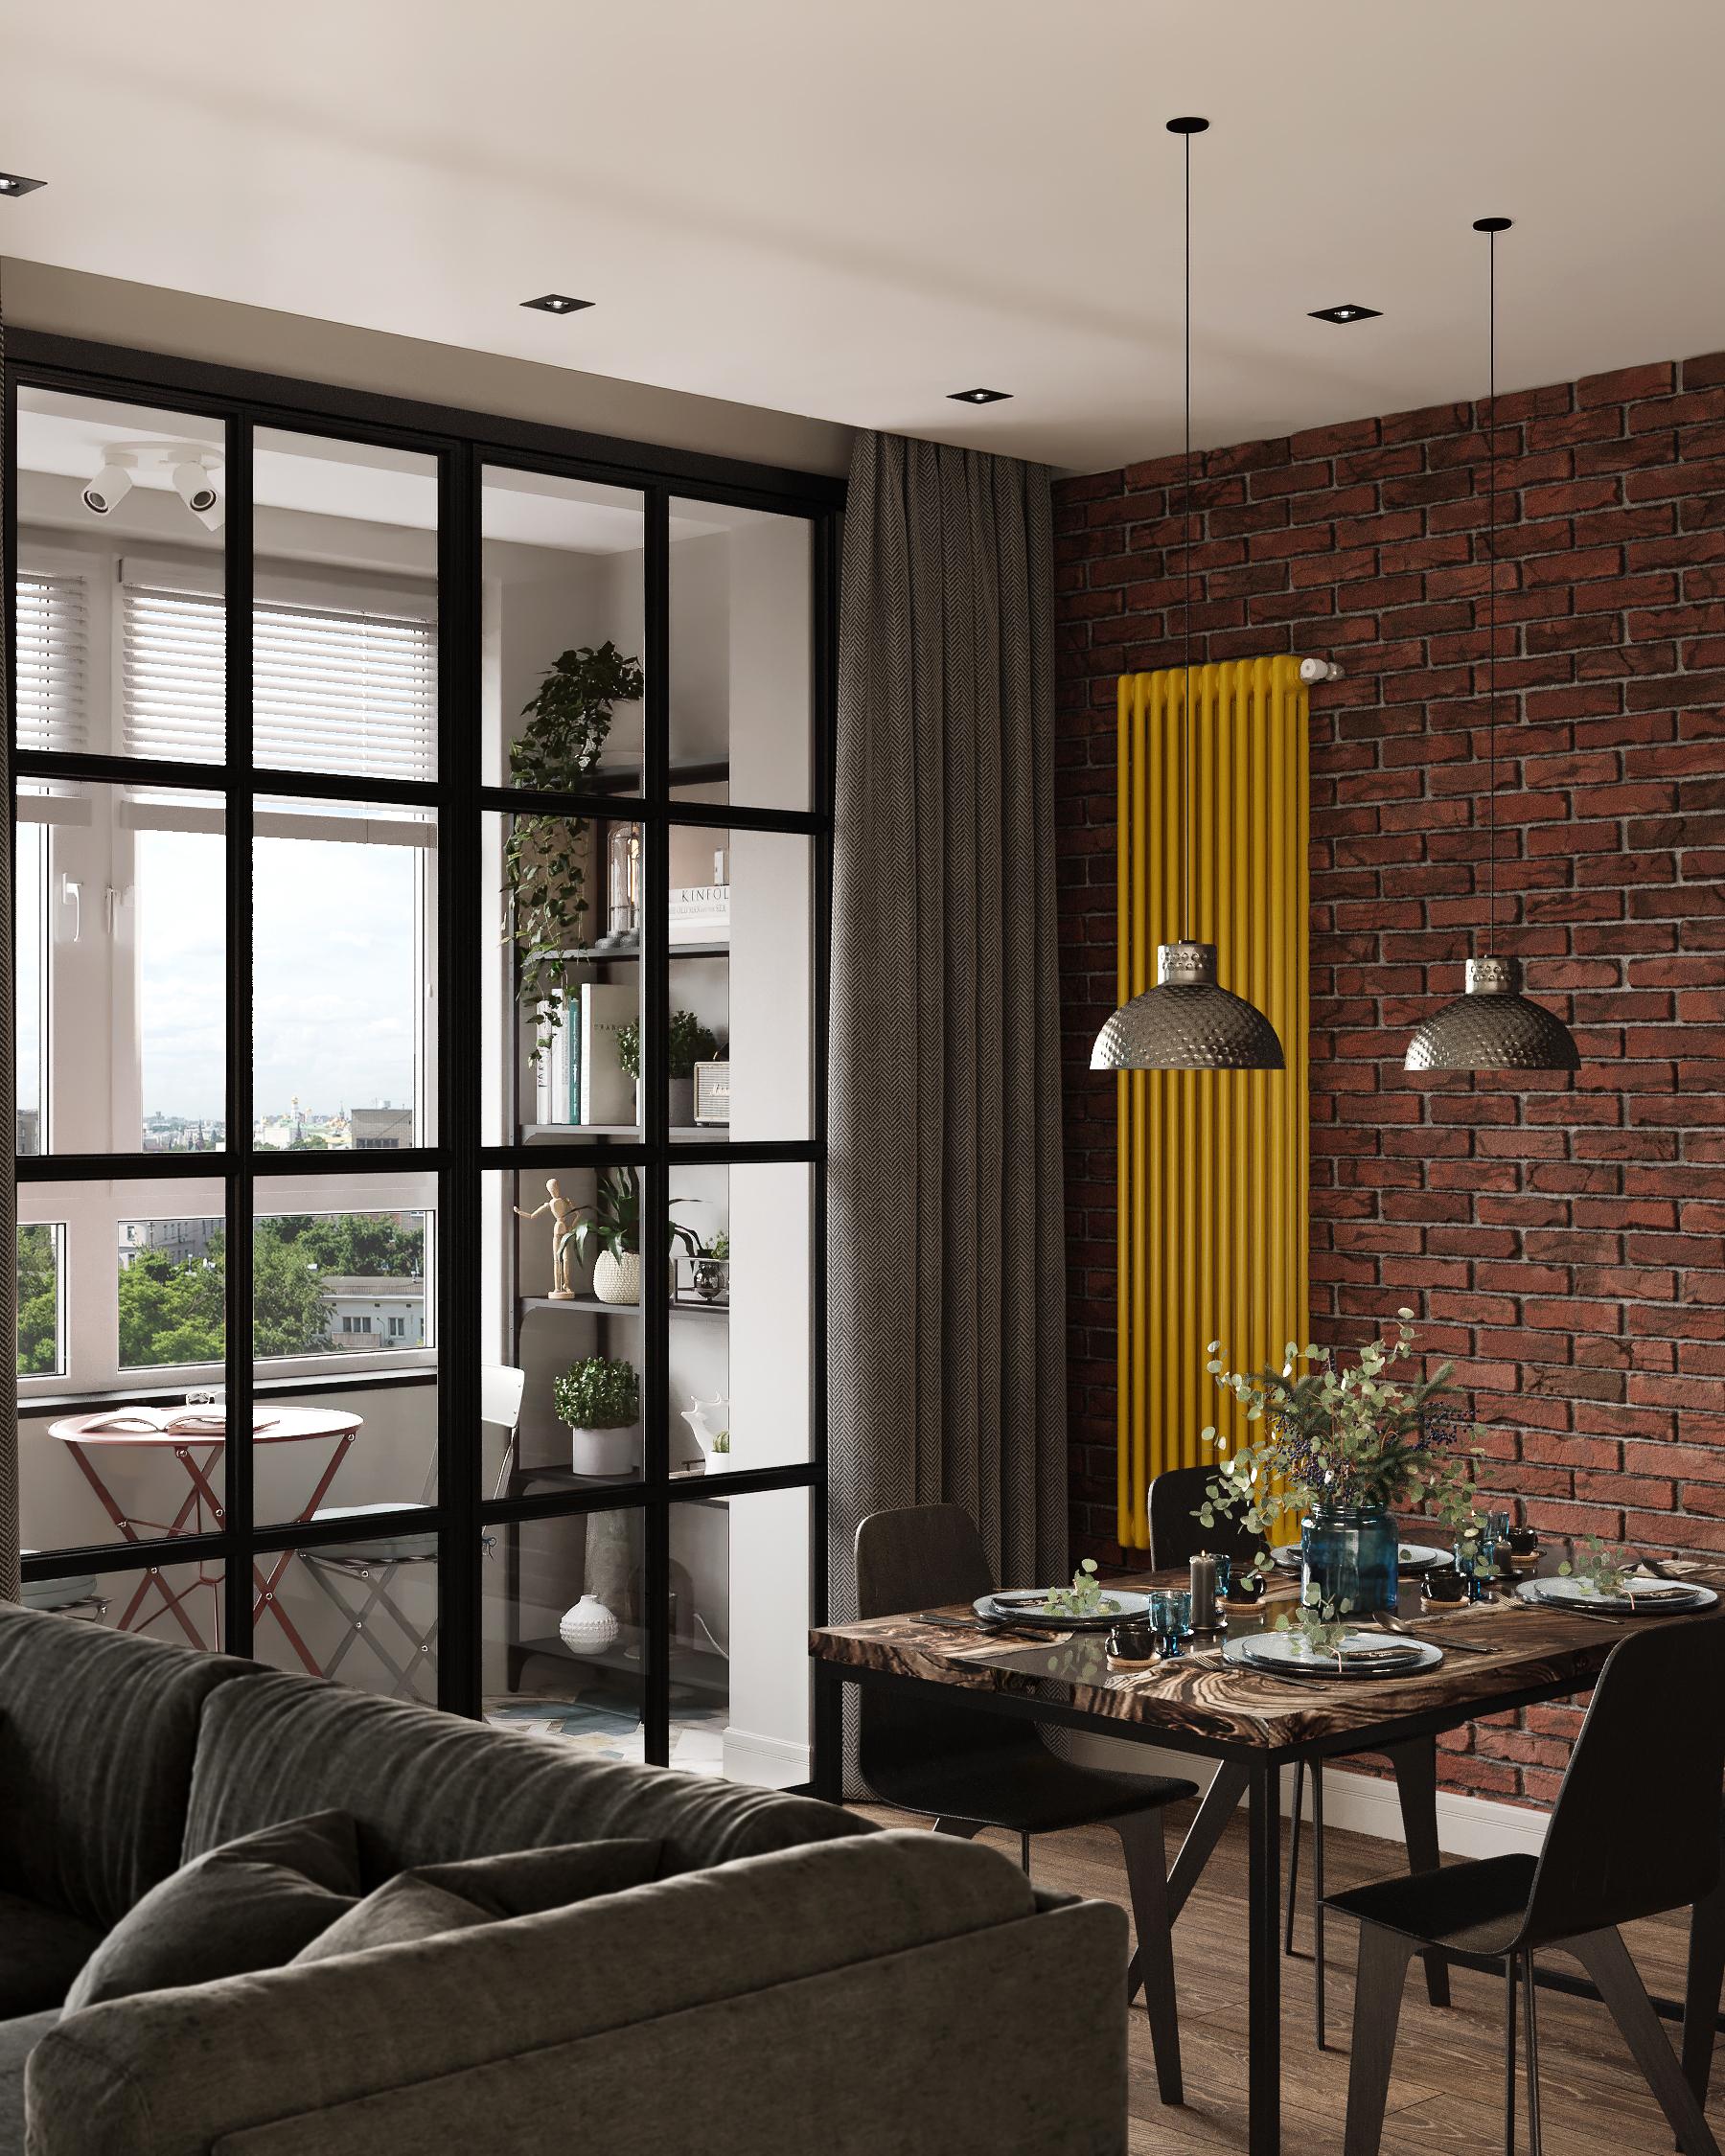 Интерьер гостиной с балконом и вертикальными жалюзи в стиле лофт